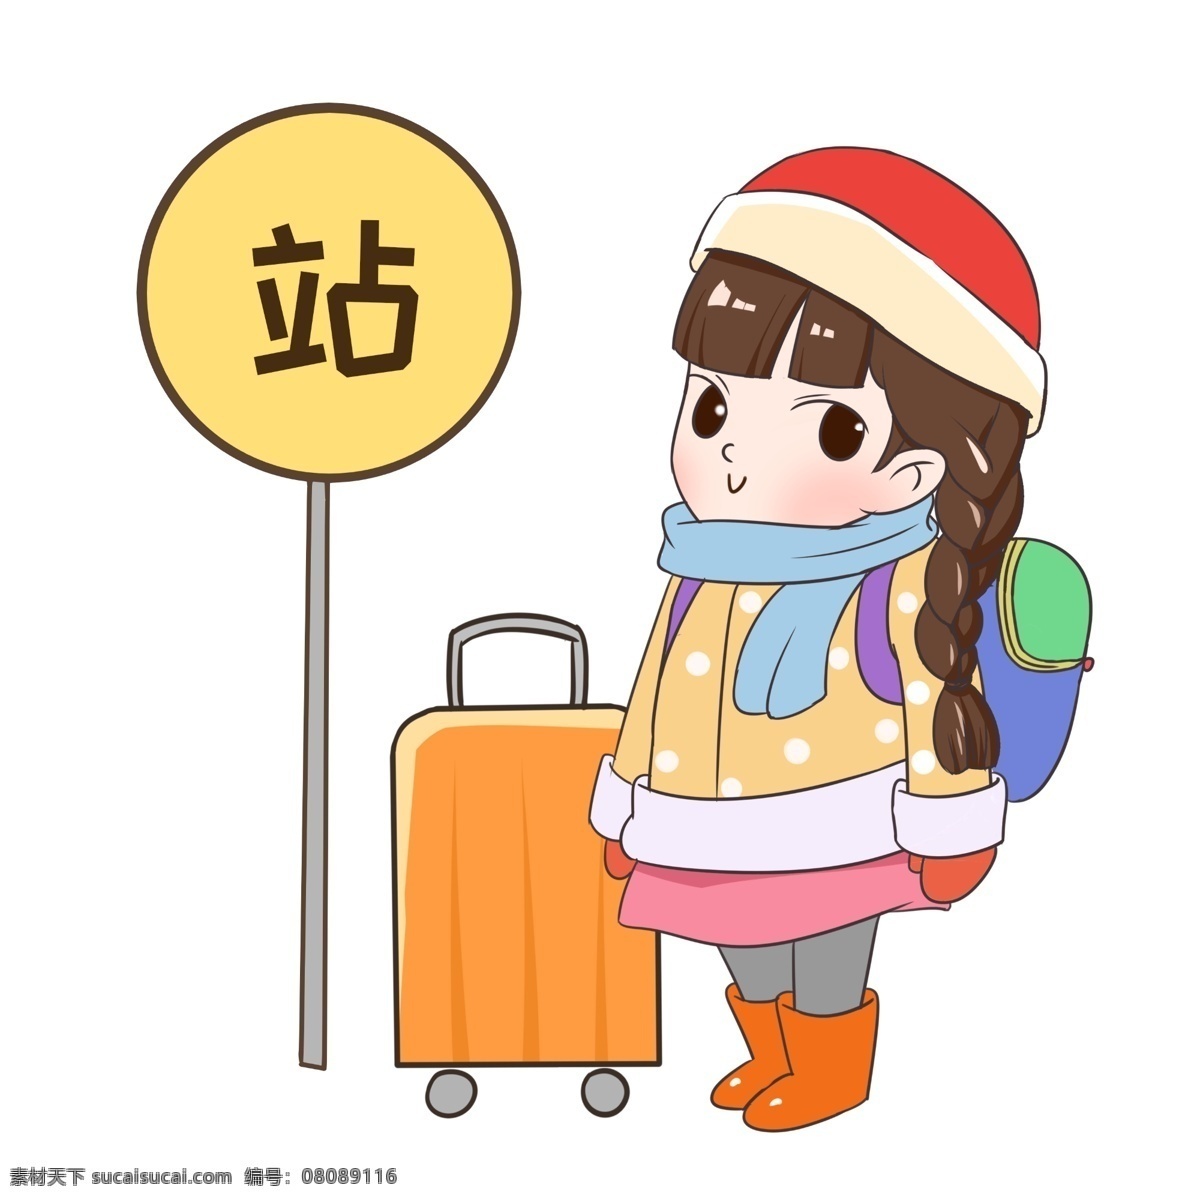 春运 等车 小女孩 插画 黄色的行李箱 漂亮的小女孩 红色的帽子 蓝色的背包 春运人物插画 黄色的站牌